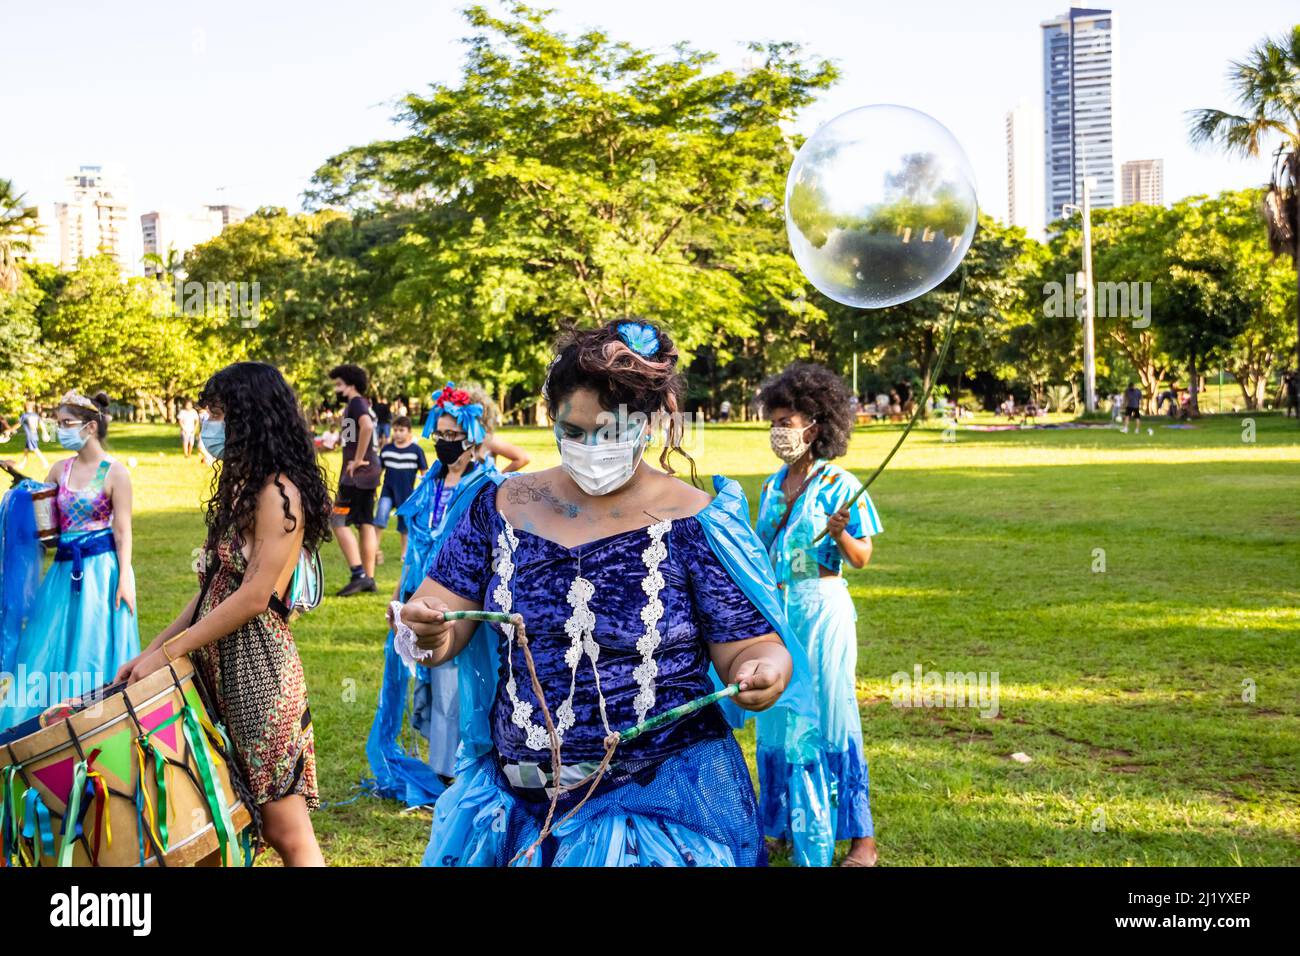 Goiânia, Goias, Brasile – 01 marzo 2022: Una ragazza che soffia enormi bolle di sapone. Foto scattata durante il Carnevale di strada in un parco pubblico della città. Foto Stock